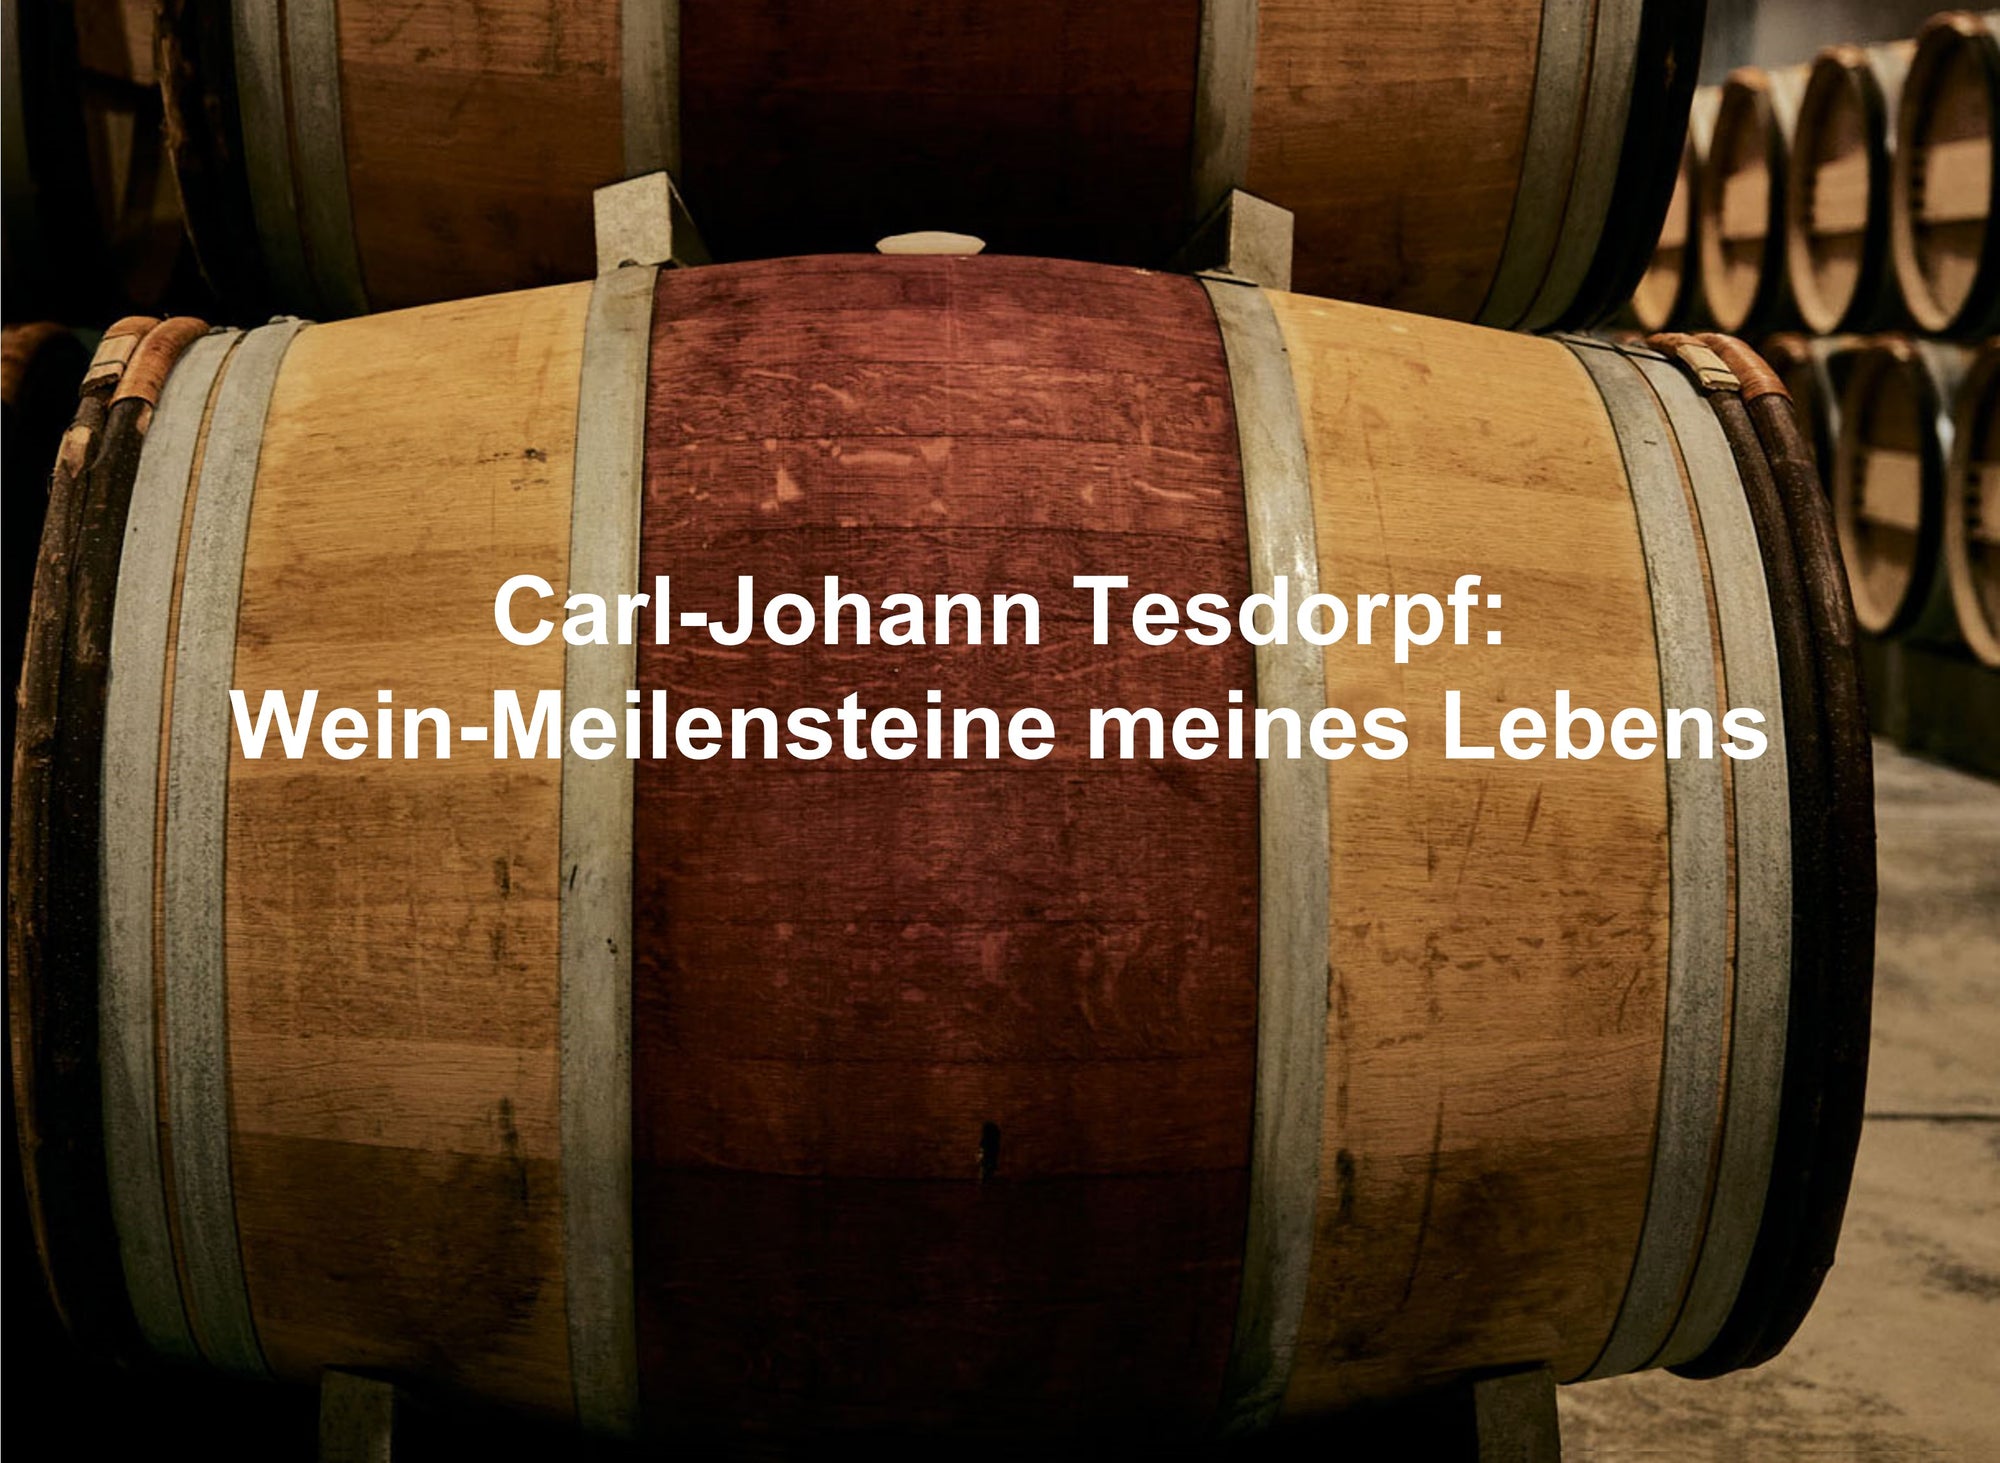 Carl-Johann Tesdorpf: Wein-Meilensteine meines Lebens